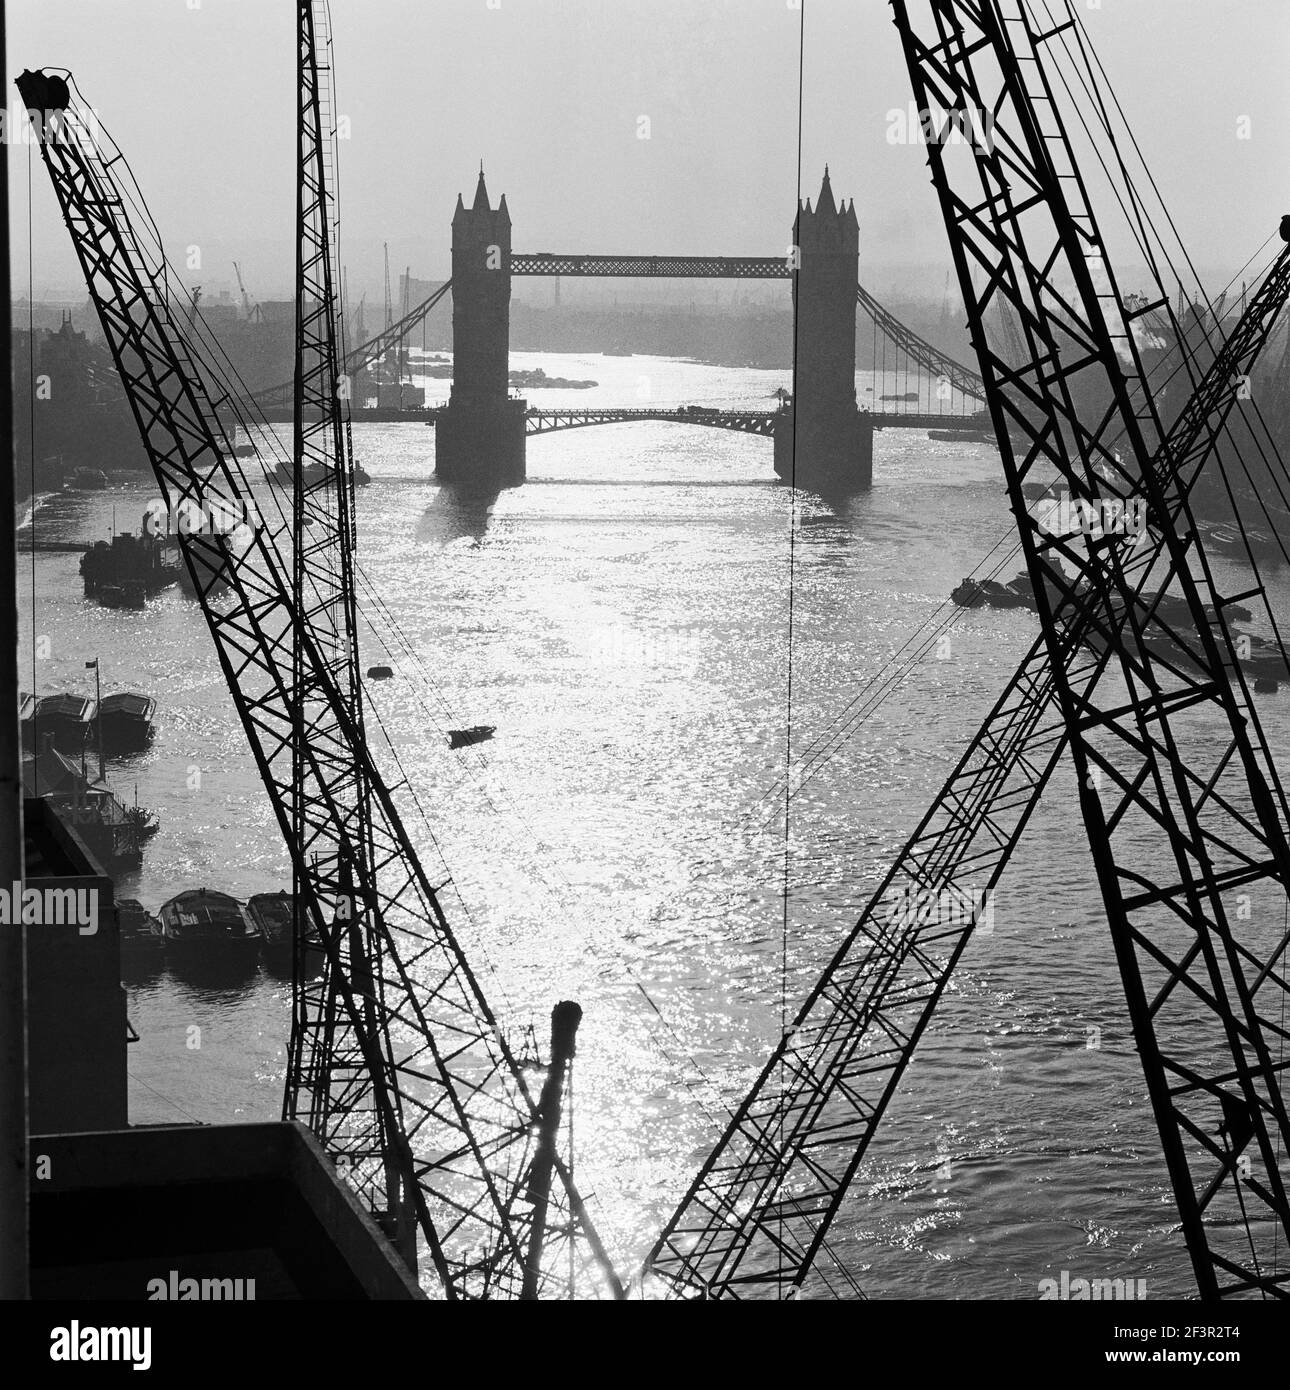 TOWER BRIDGE, Londres. El puente visto desde las gantry ribereñas, mirando hacia el este. El Támesis sigue siendo un puerto importante, con barcazas del Támesis y otras embarcaciones mo Foto de stock